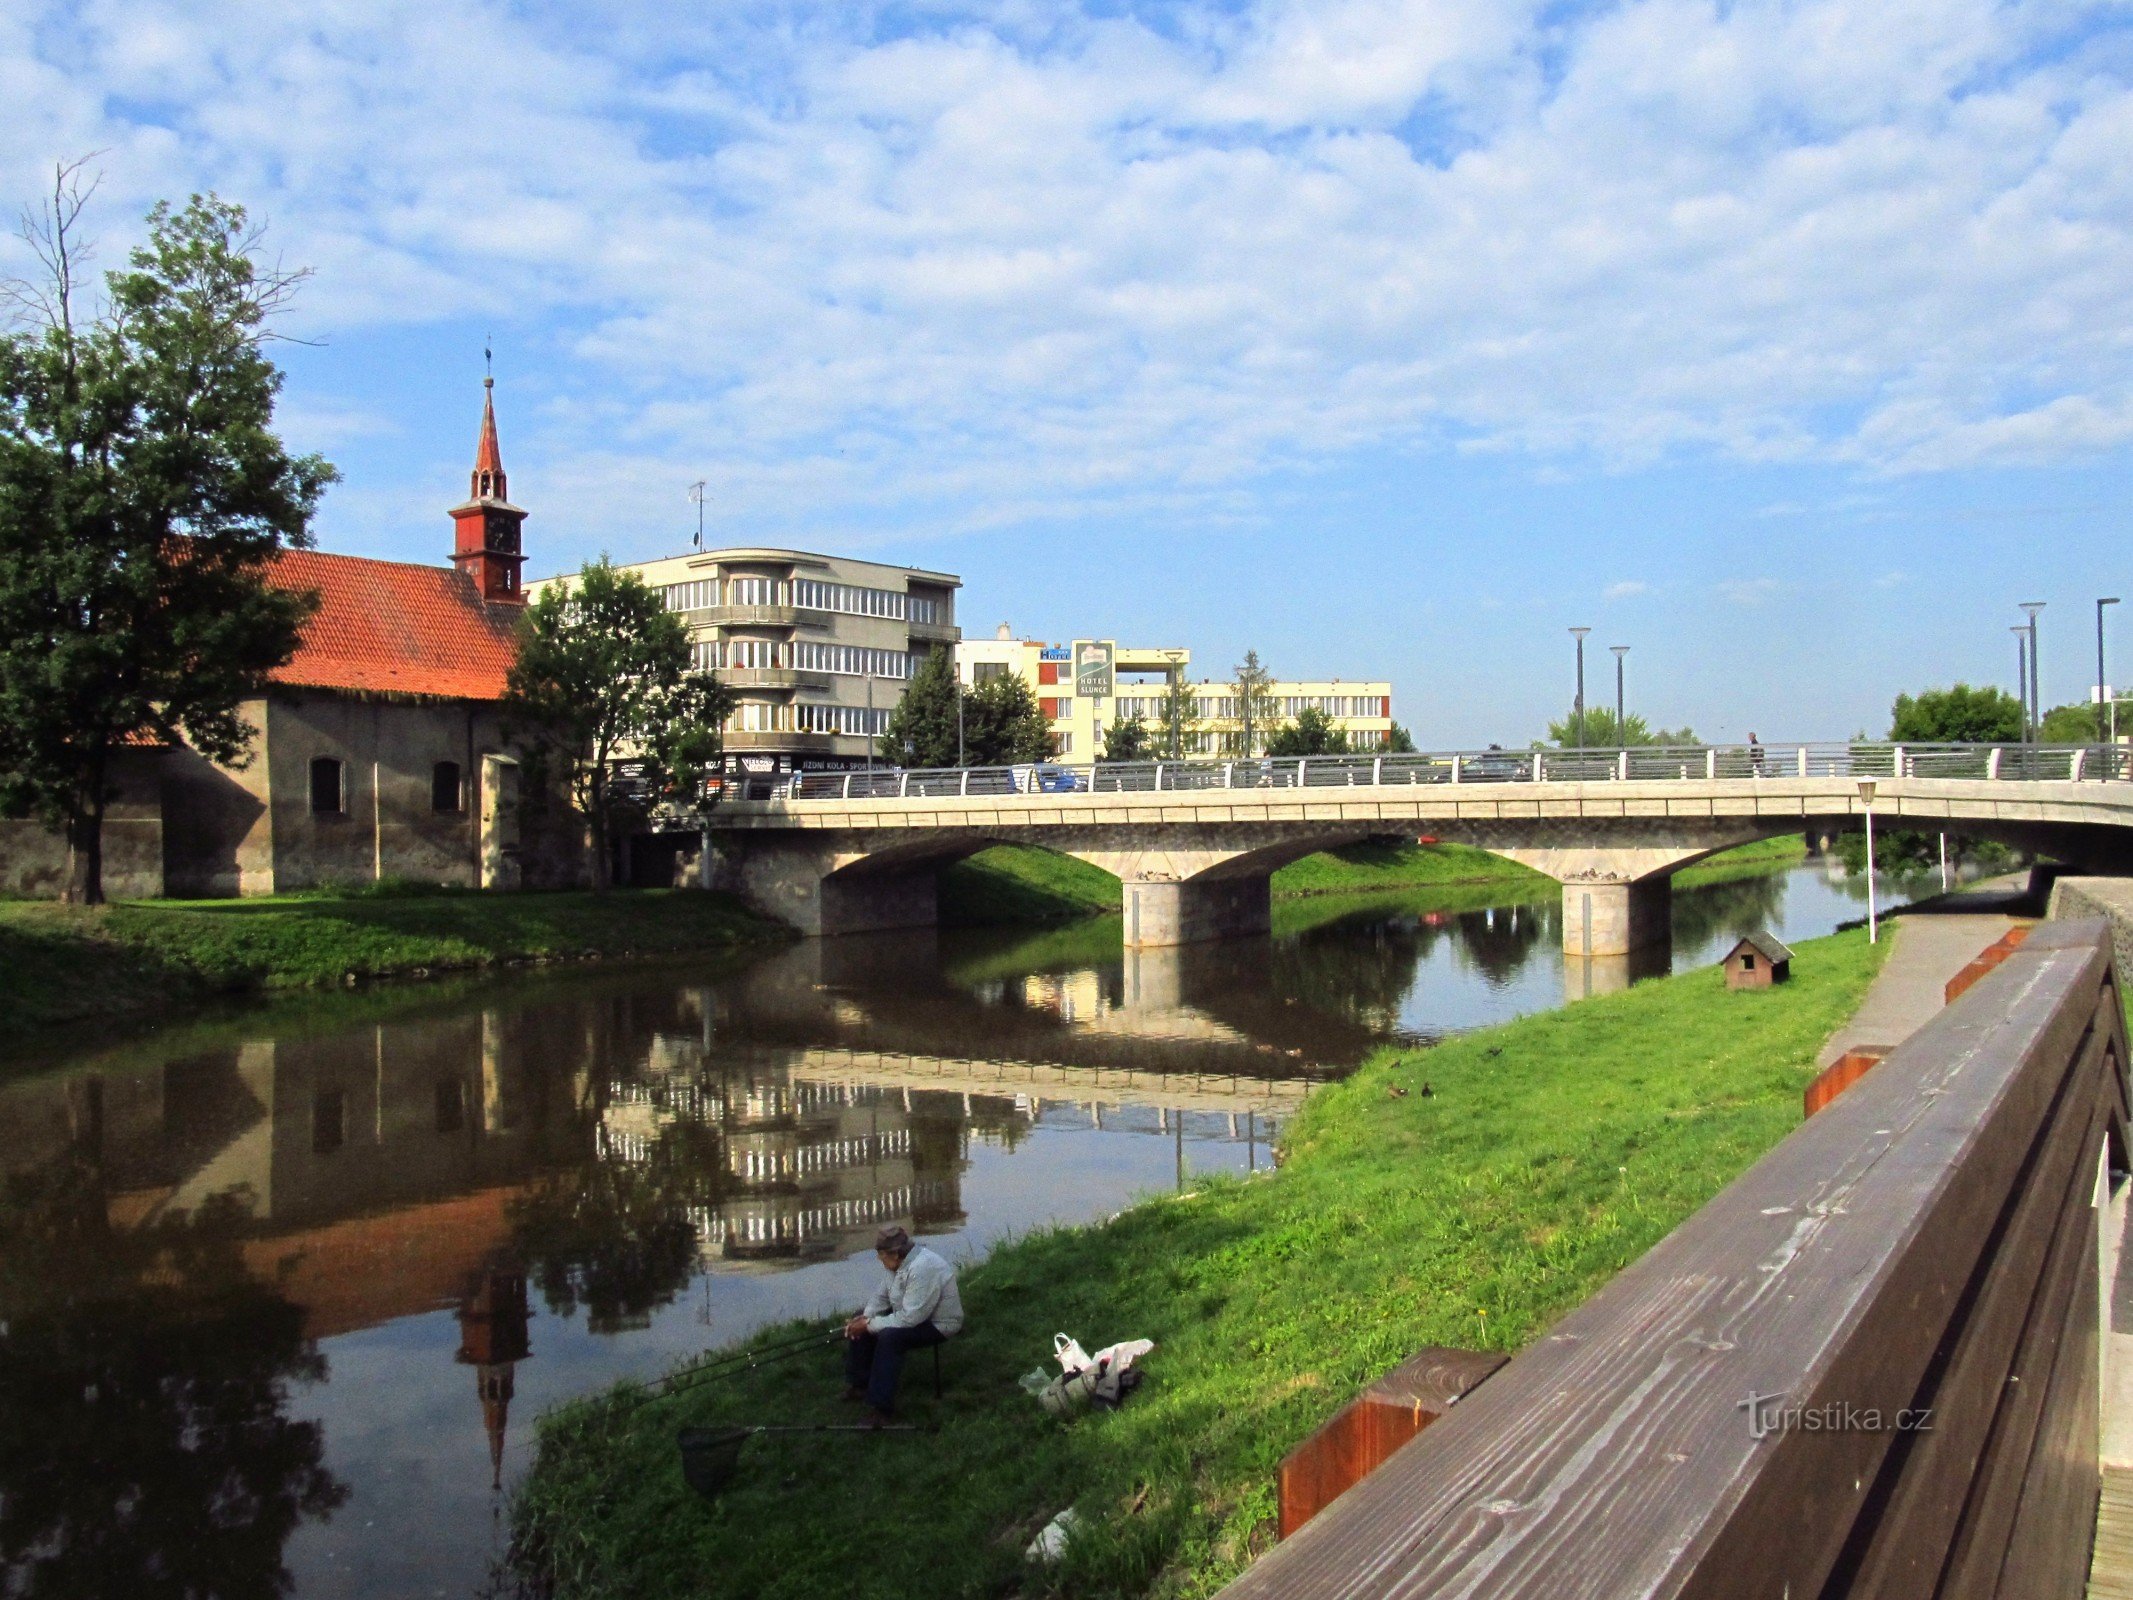 02 Havlíčkův Brod、圣凯瑟琳的桥梁和教堂